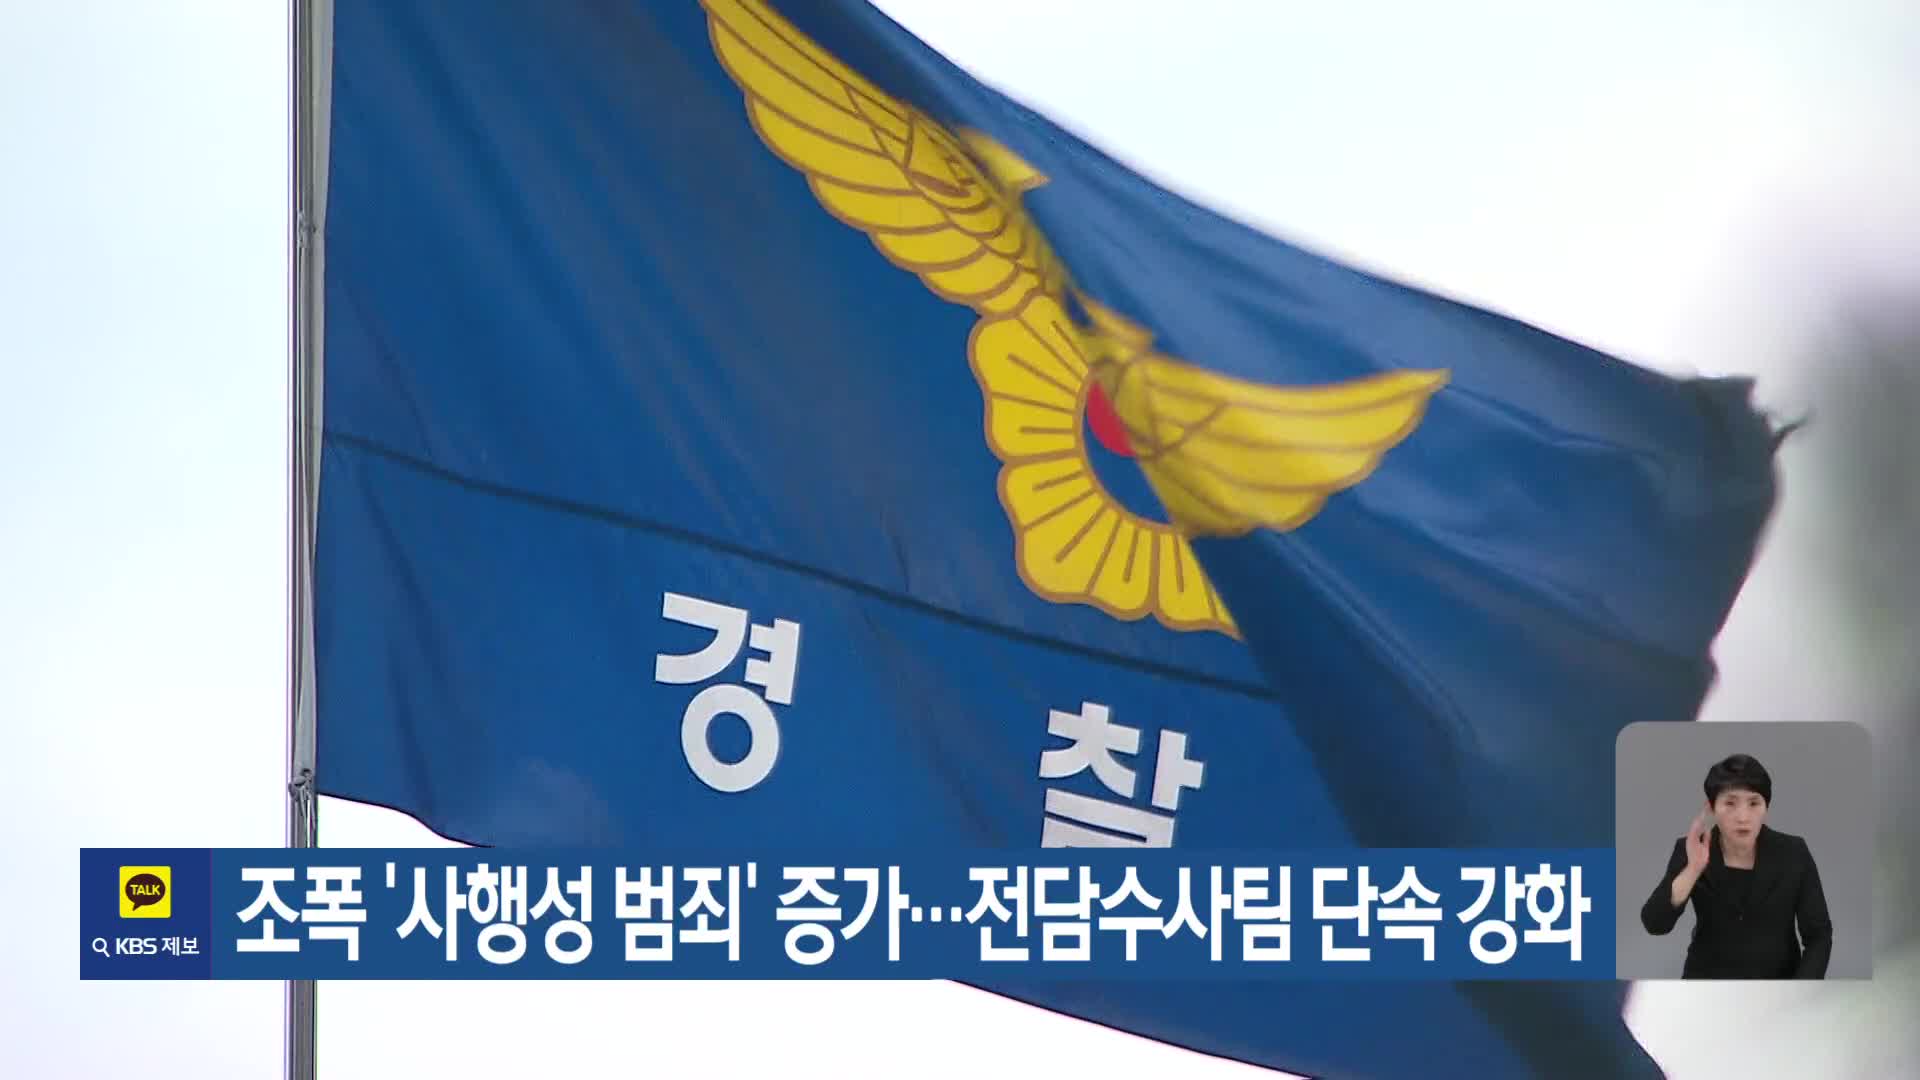 조폭 ‘사행성 범죄’ 증가…전담수사팀 단속 강화